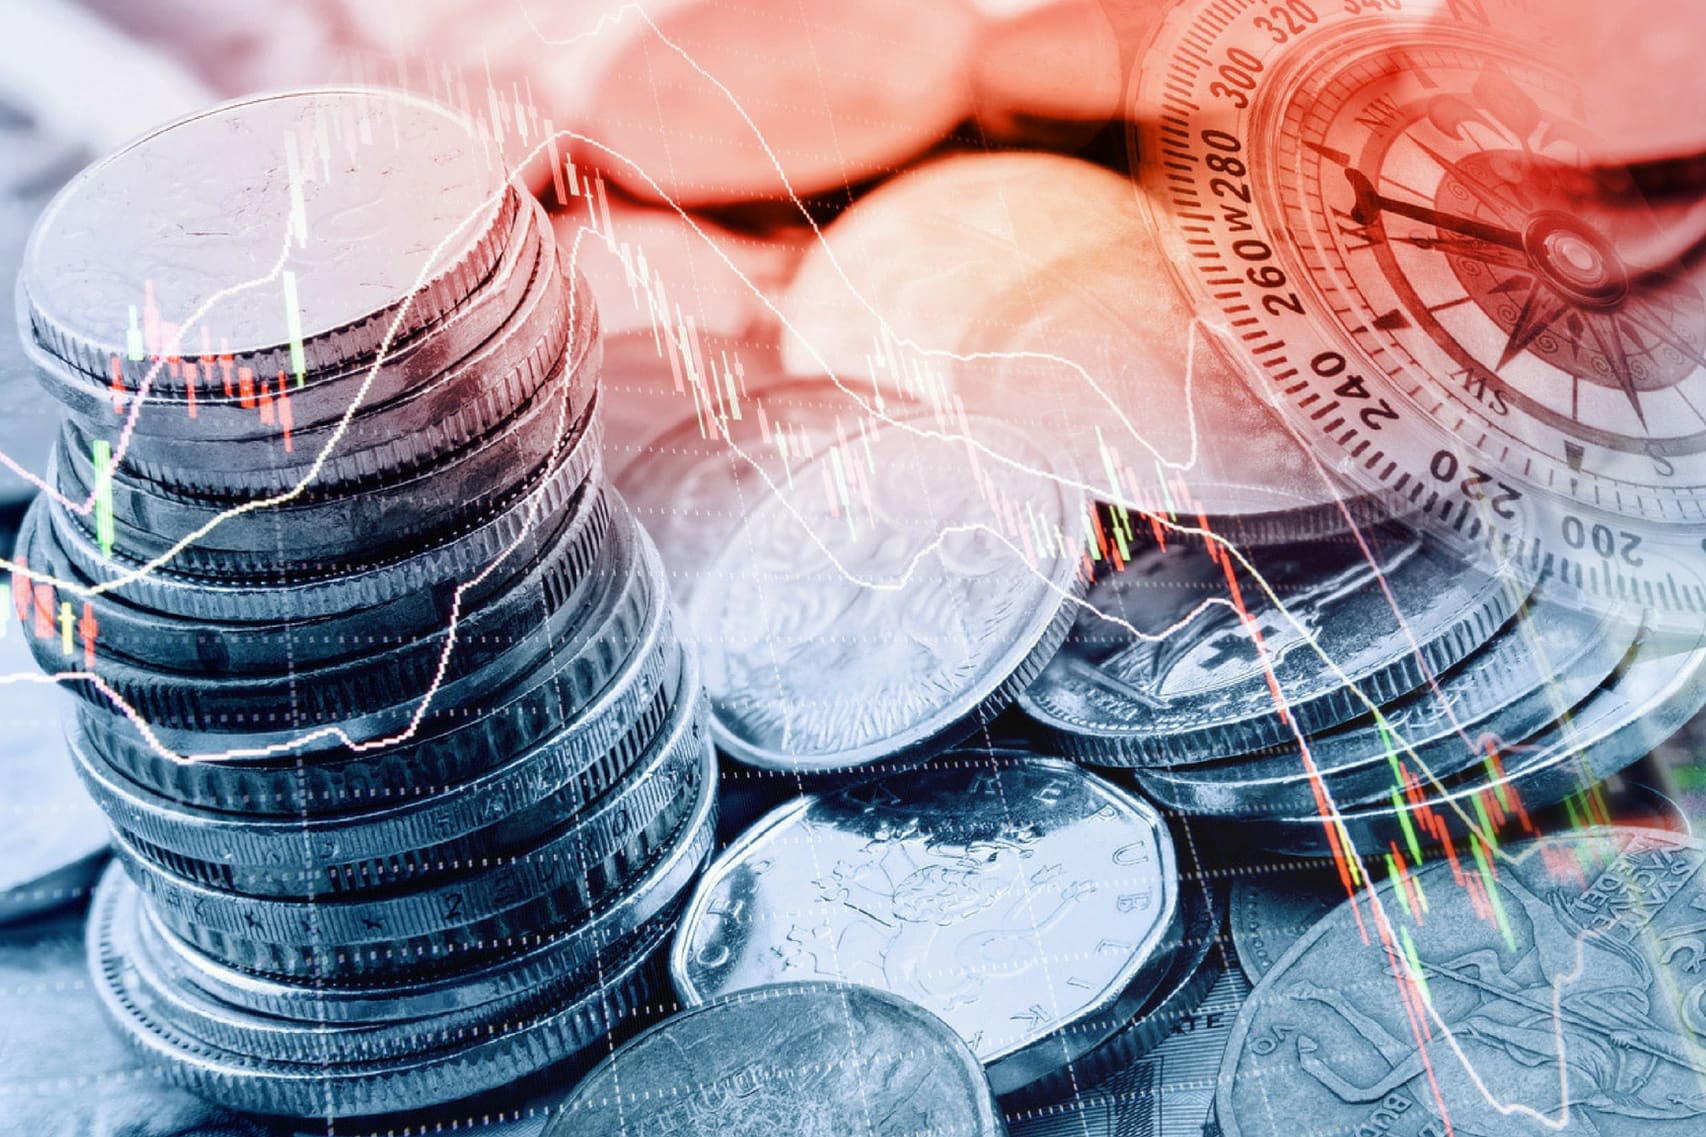 Top Exchange Coins